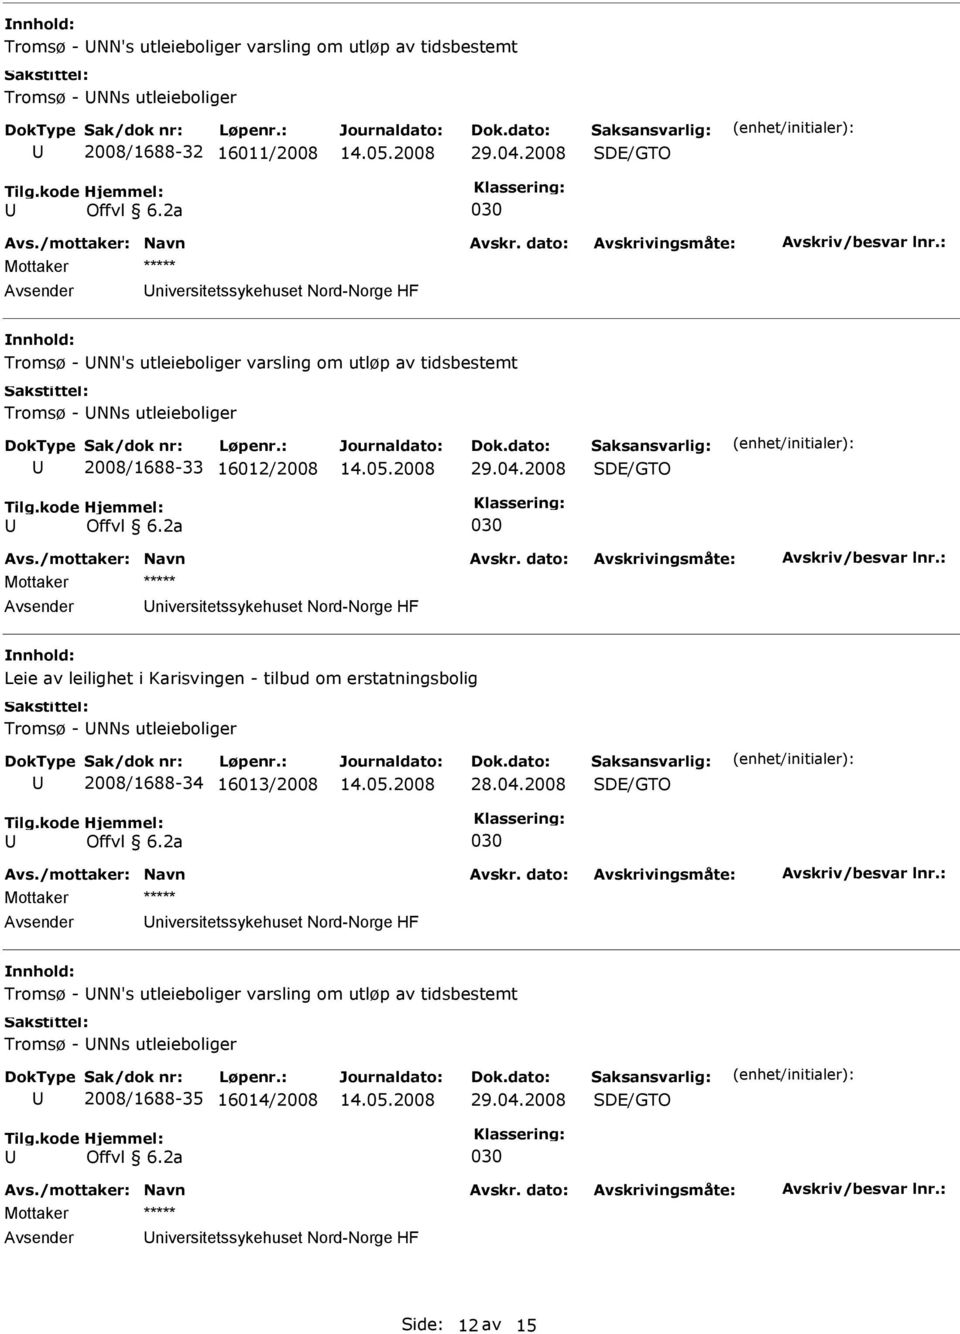 Leie av leilighet i Karisvingen - tilbud om erstatningsbolig Tromsø - NNs utleieboliger 2008/1688-34 16013/2008 niversitetssykehuset Nord-Norge HF